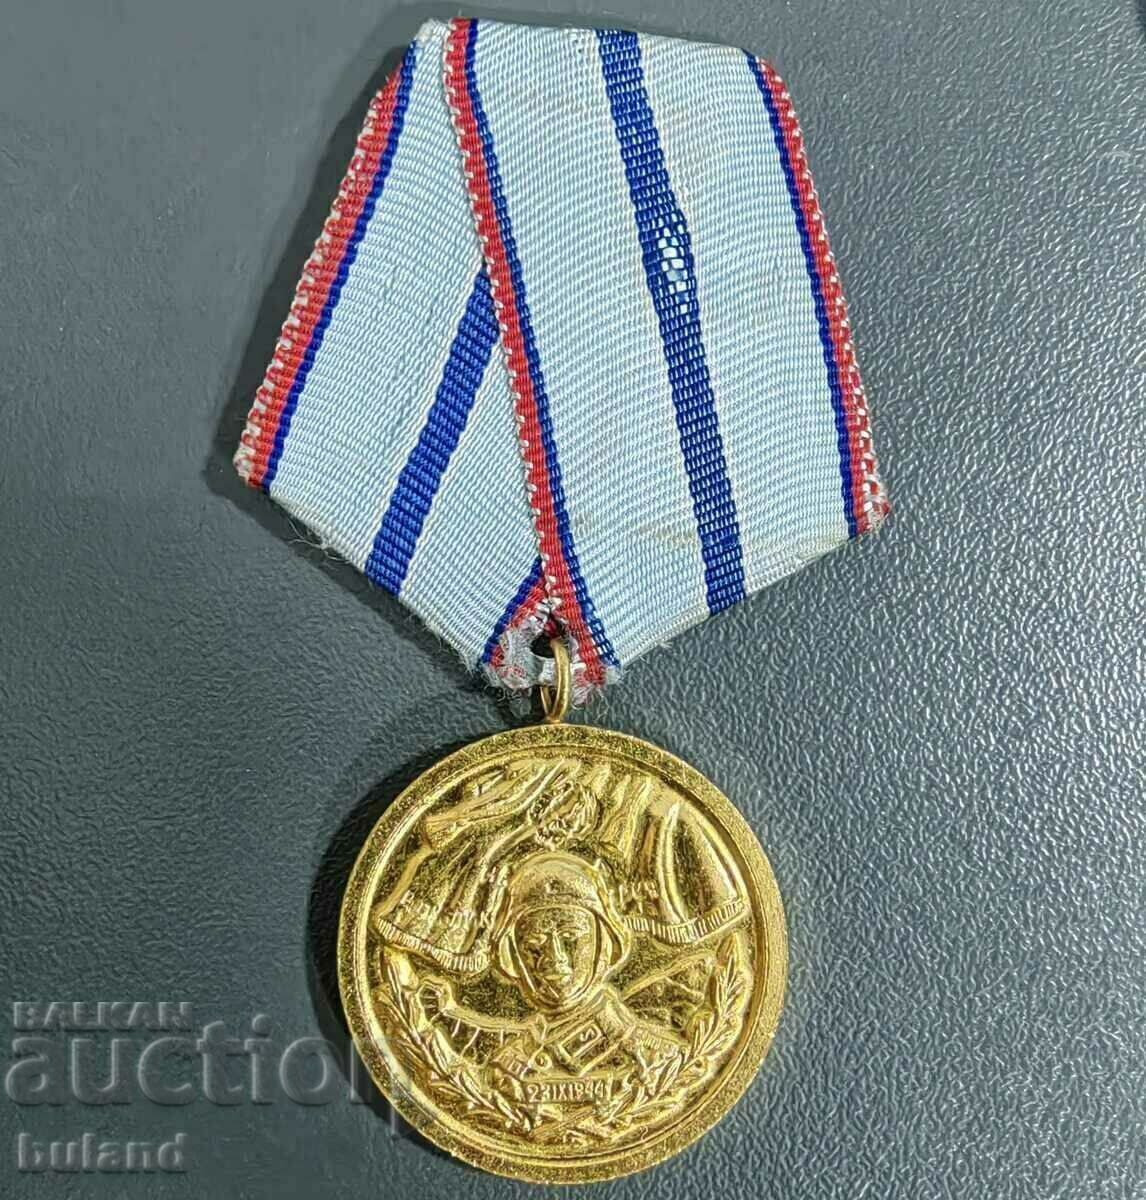 Medalia Socială Bulgară 20 de ani Serviciu impecabil în Armata BNA NRB